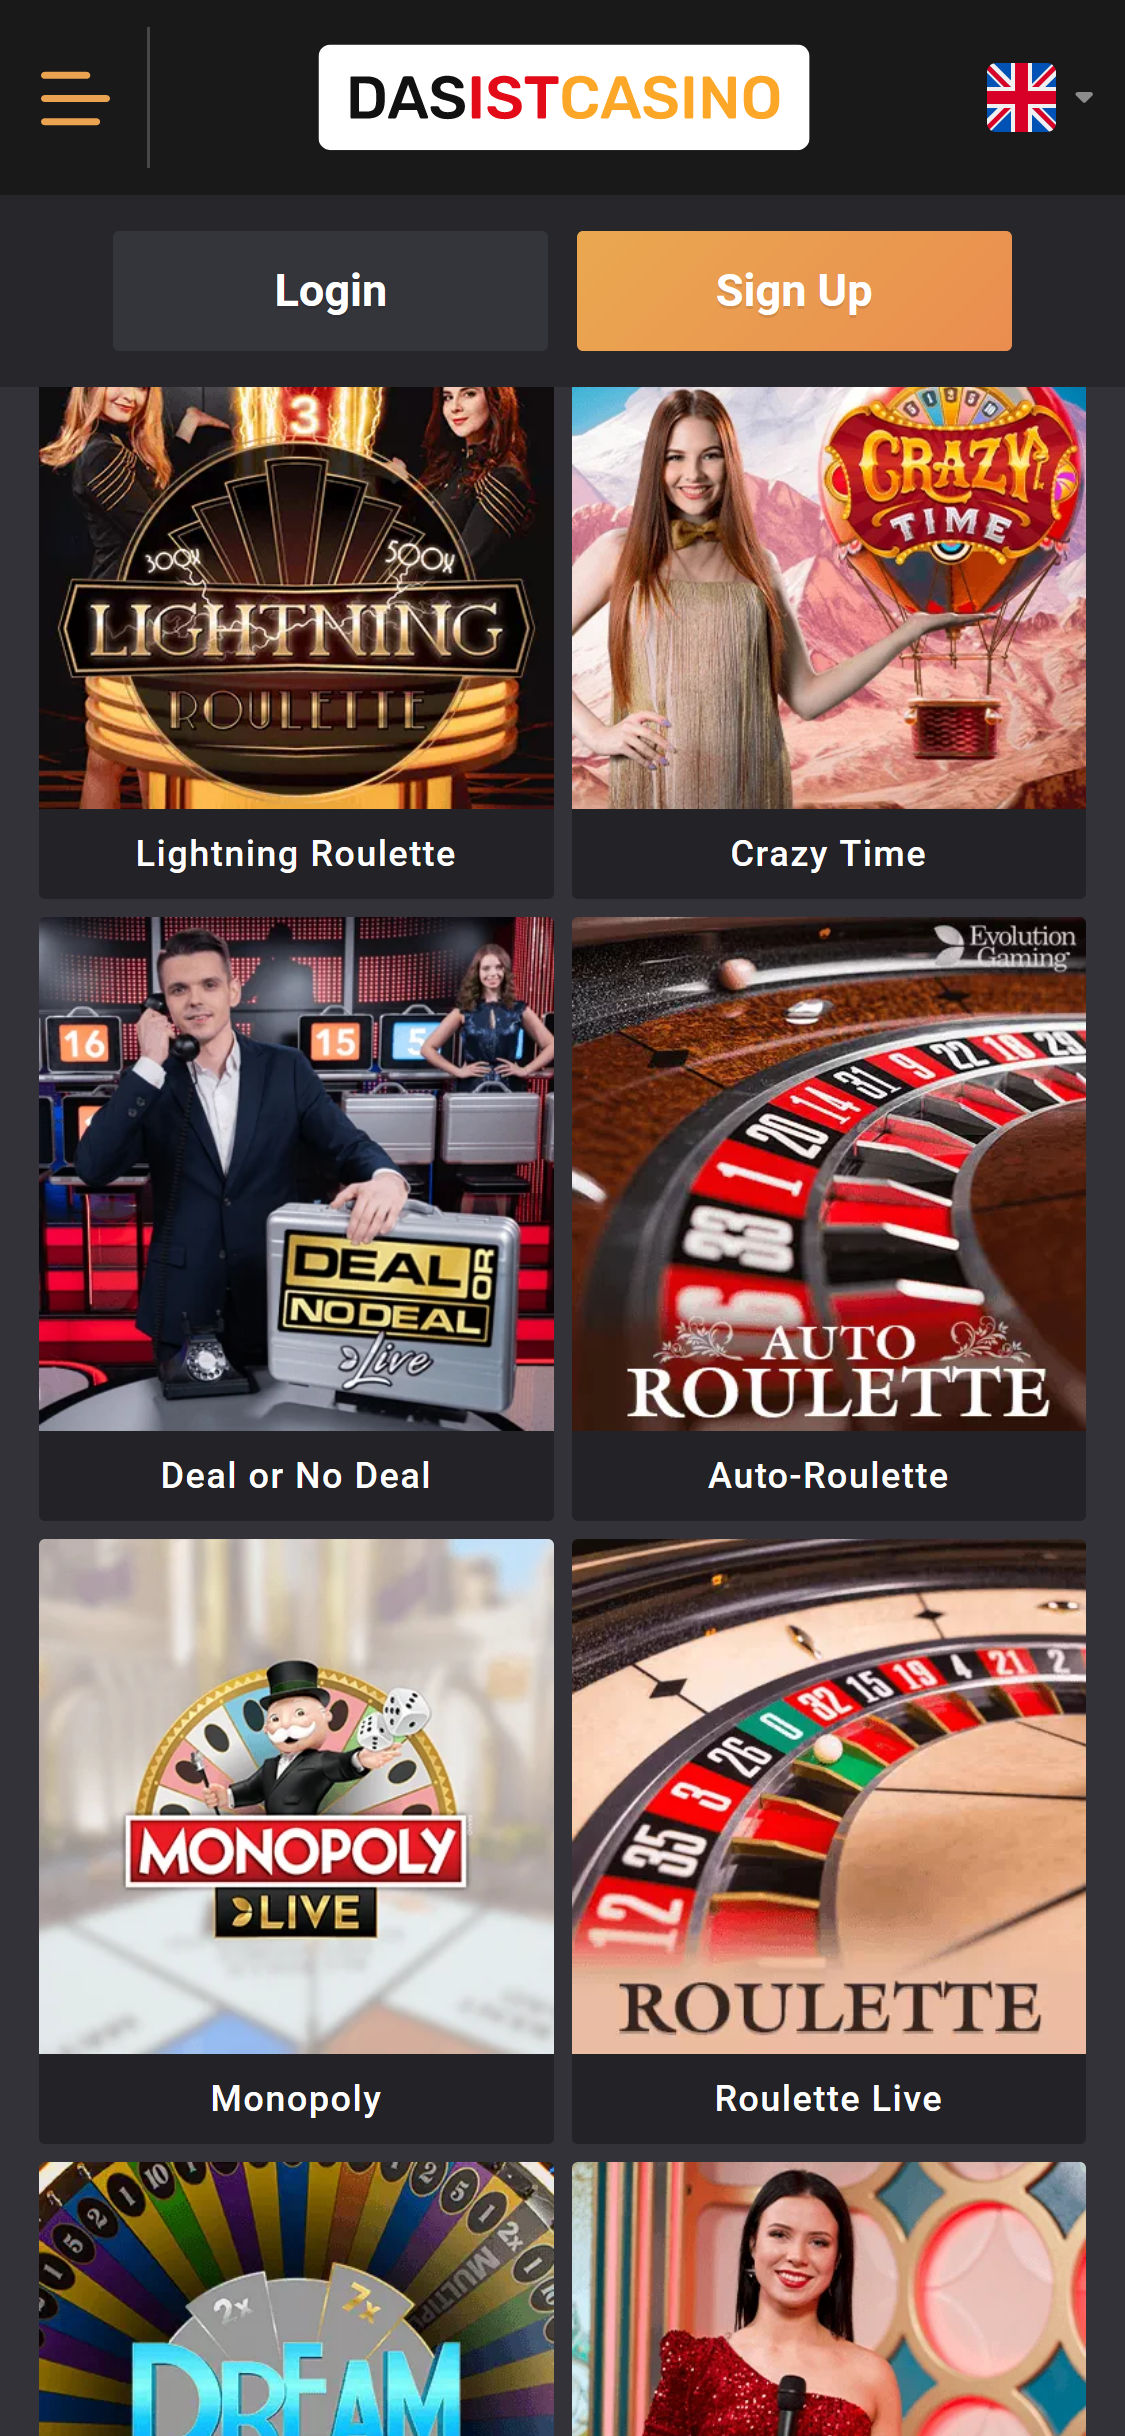 Das ist Casino Mobile Live Dealer Games Review